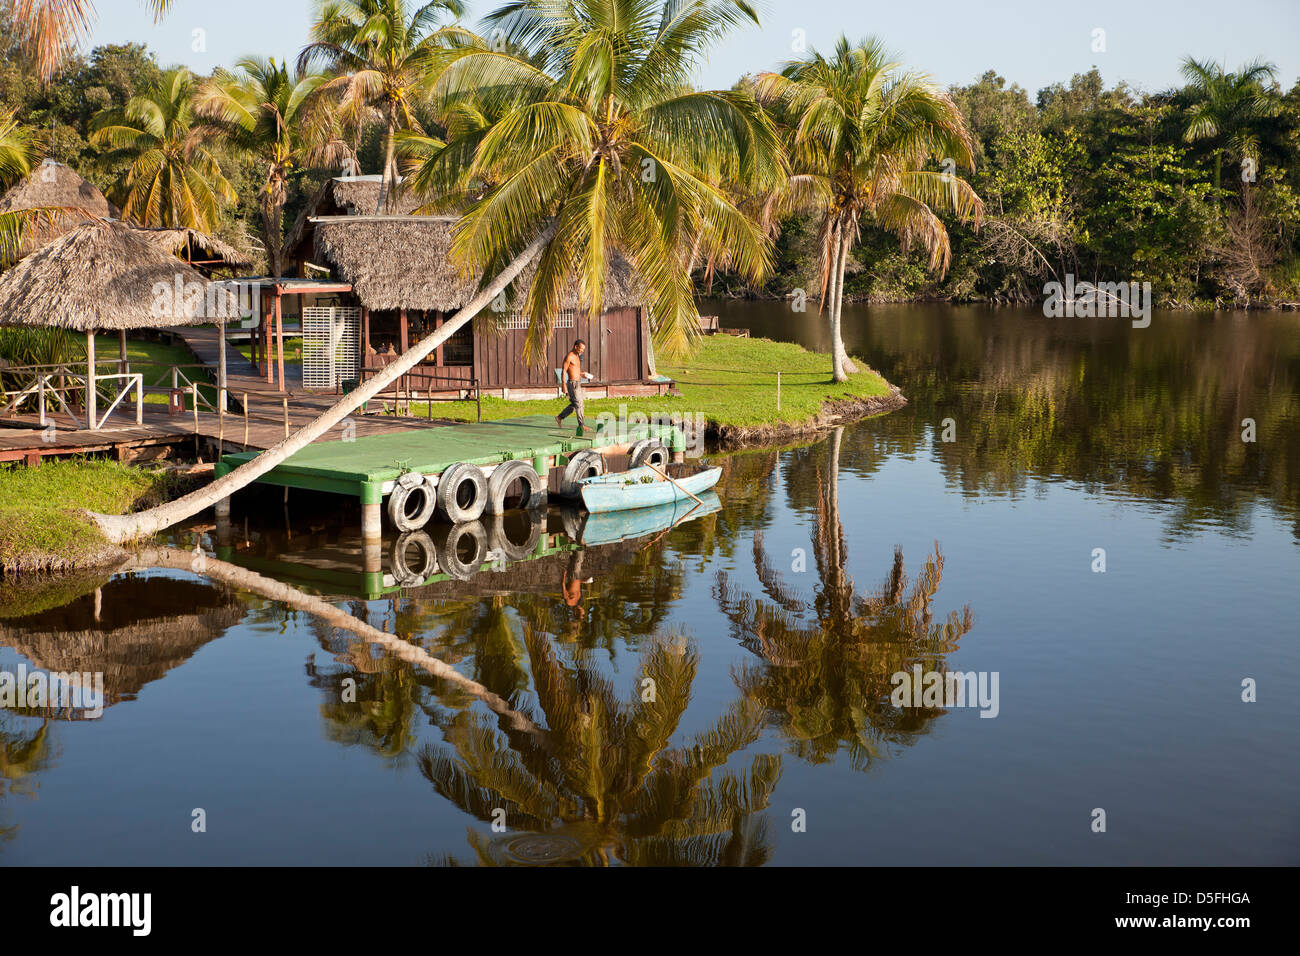 L'humeur du matin à Villa Guamá, petit hôtel conçu pour ressembler à un village indien sur pilotis dans l'eau près de Boca de Guama, Banque D'Images